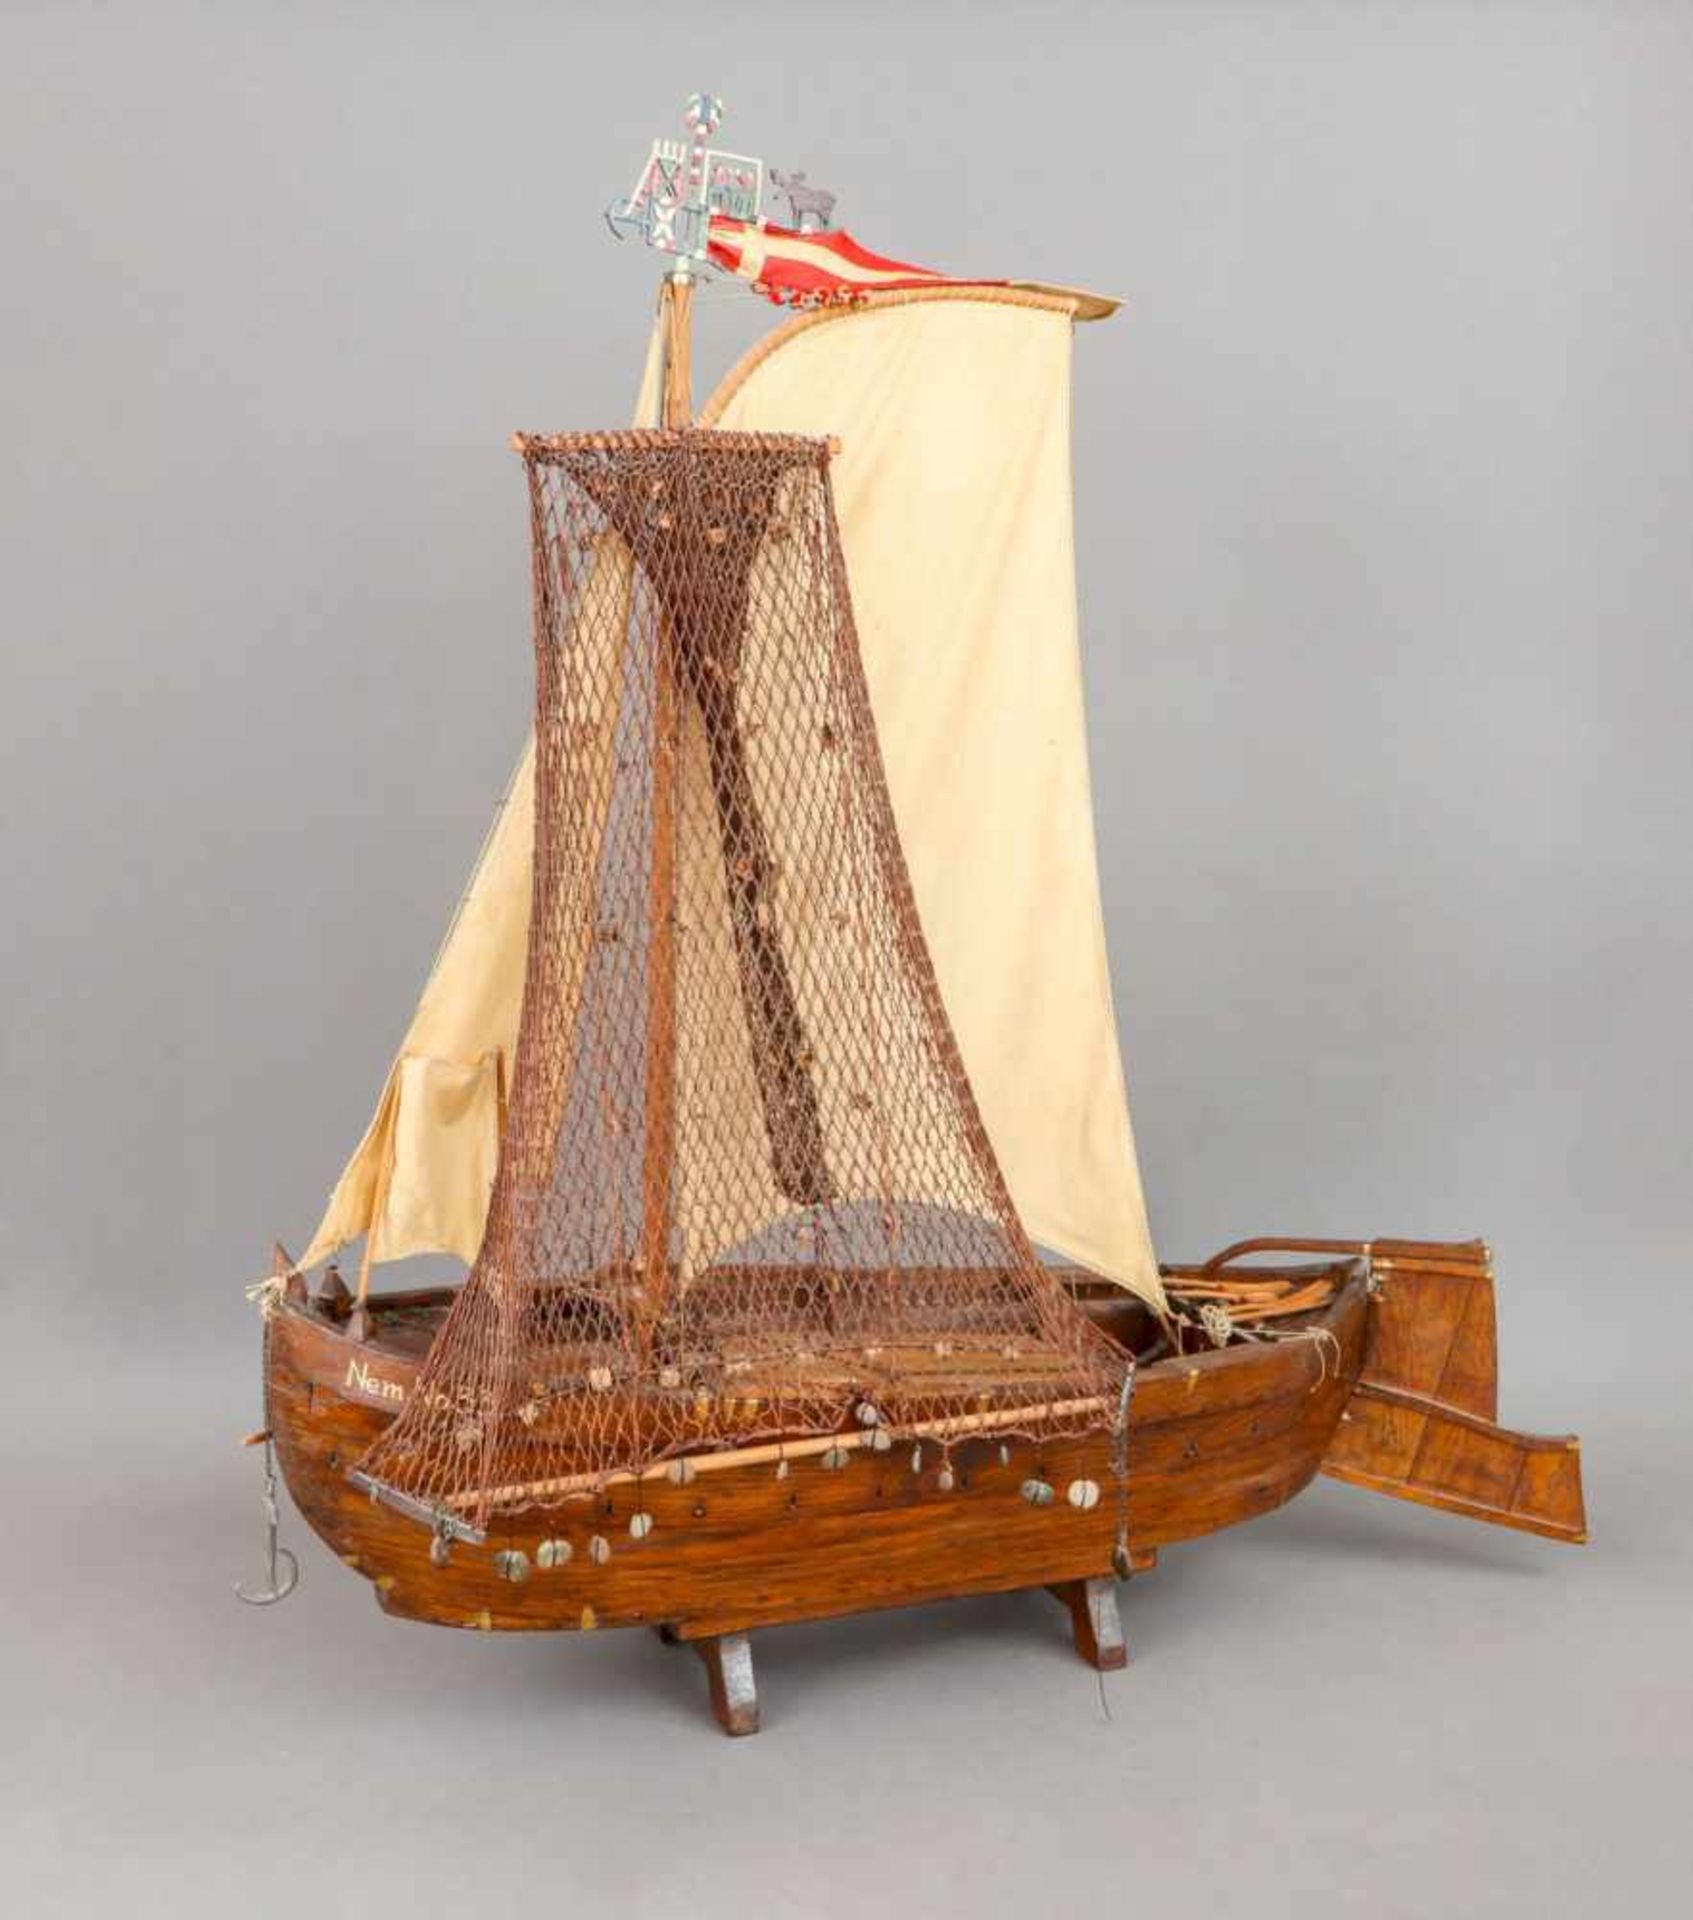 Modell eines Küstenseglers (Fischerboot)Rumpf Eichenholz, dunkel gebeizt Segel Leinen,